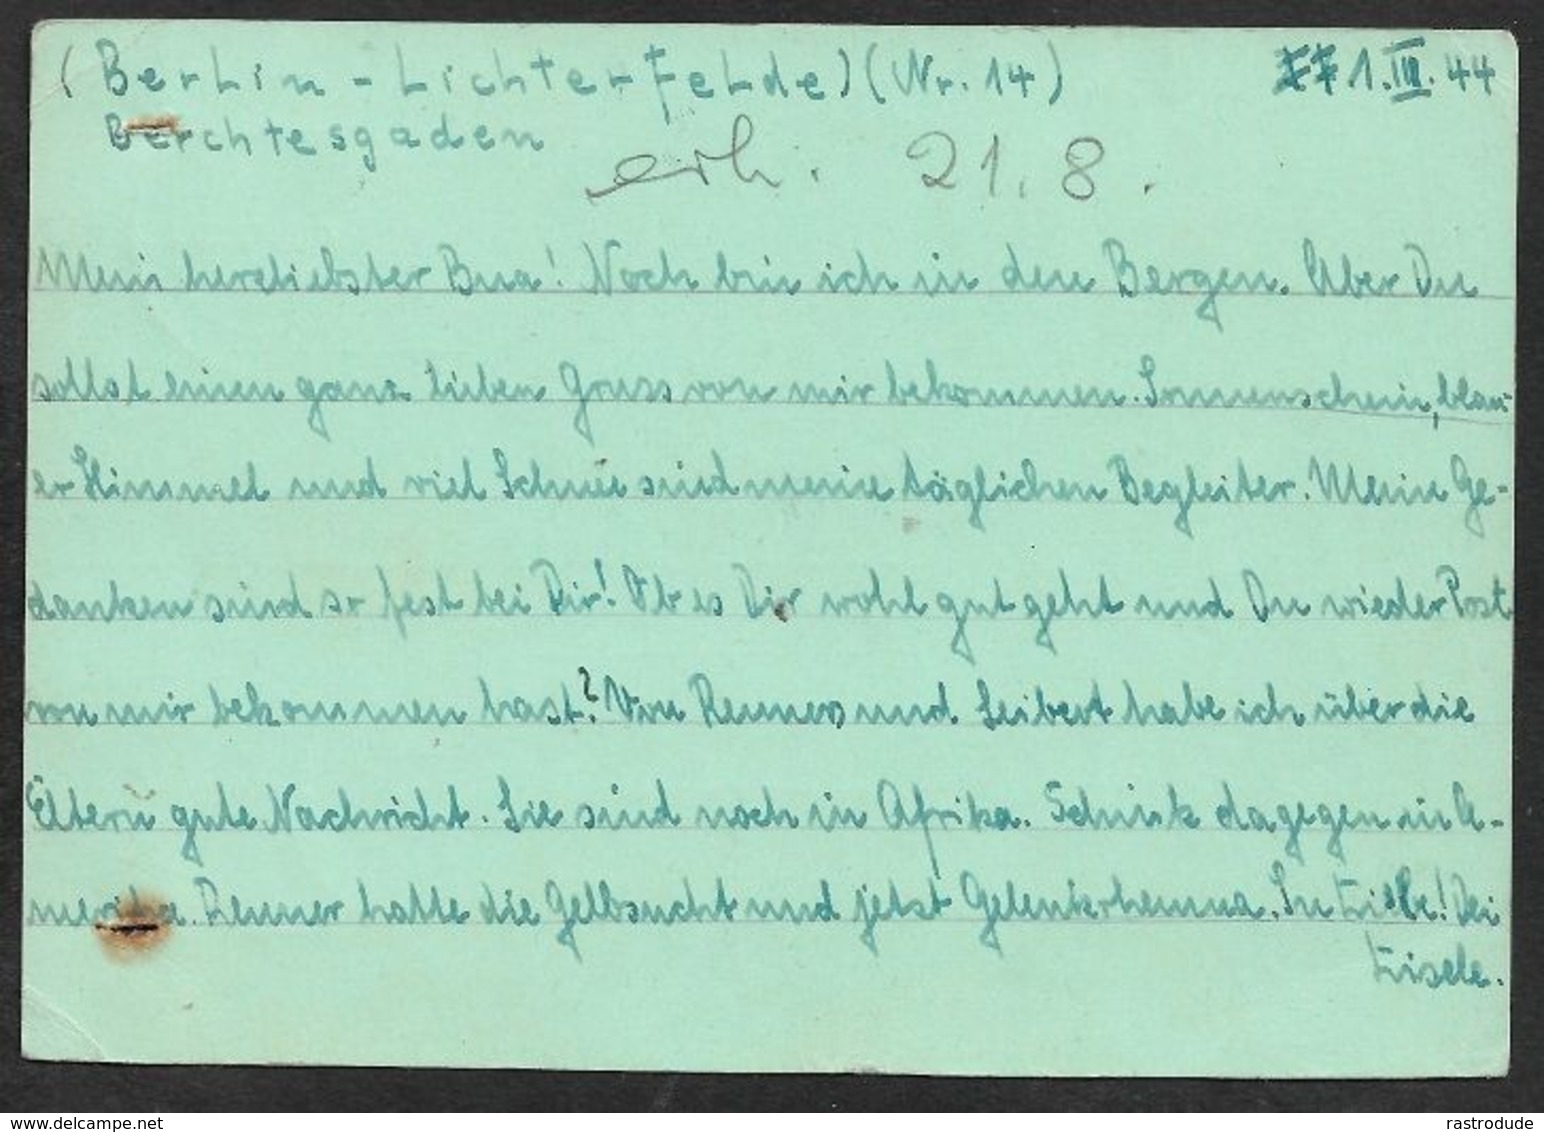 1944 PRISONNIERS DE GUERRE - KRIEGSGEFANGENENPOST - BERLIN, A GÉRYVILLE  / LAGER Nr.1, ALGERIE - CENSURE, CACHET DÉPOT - Covers & Documents